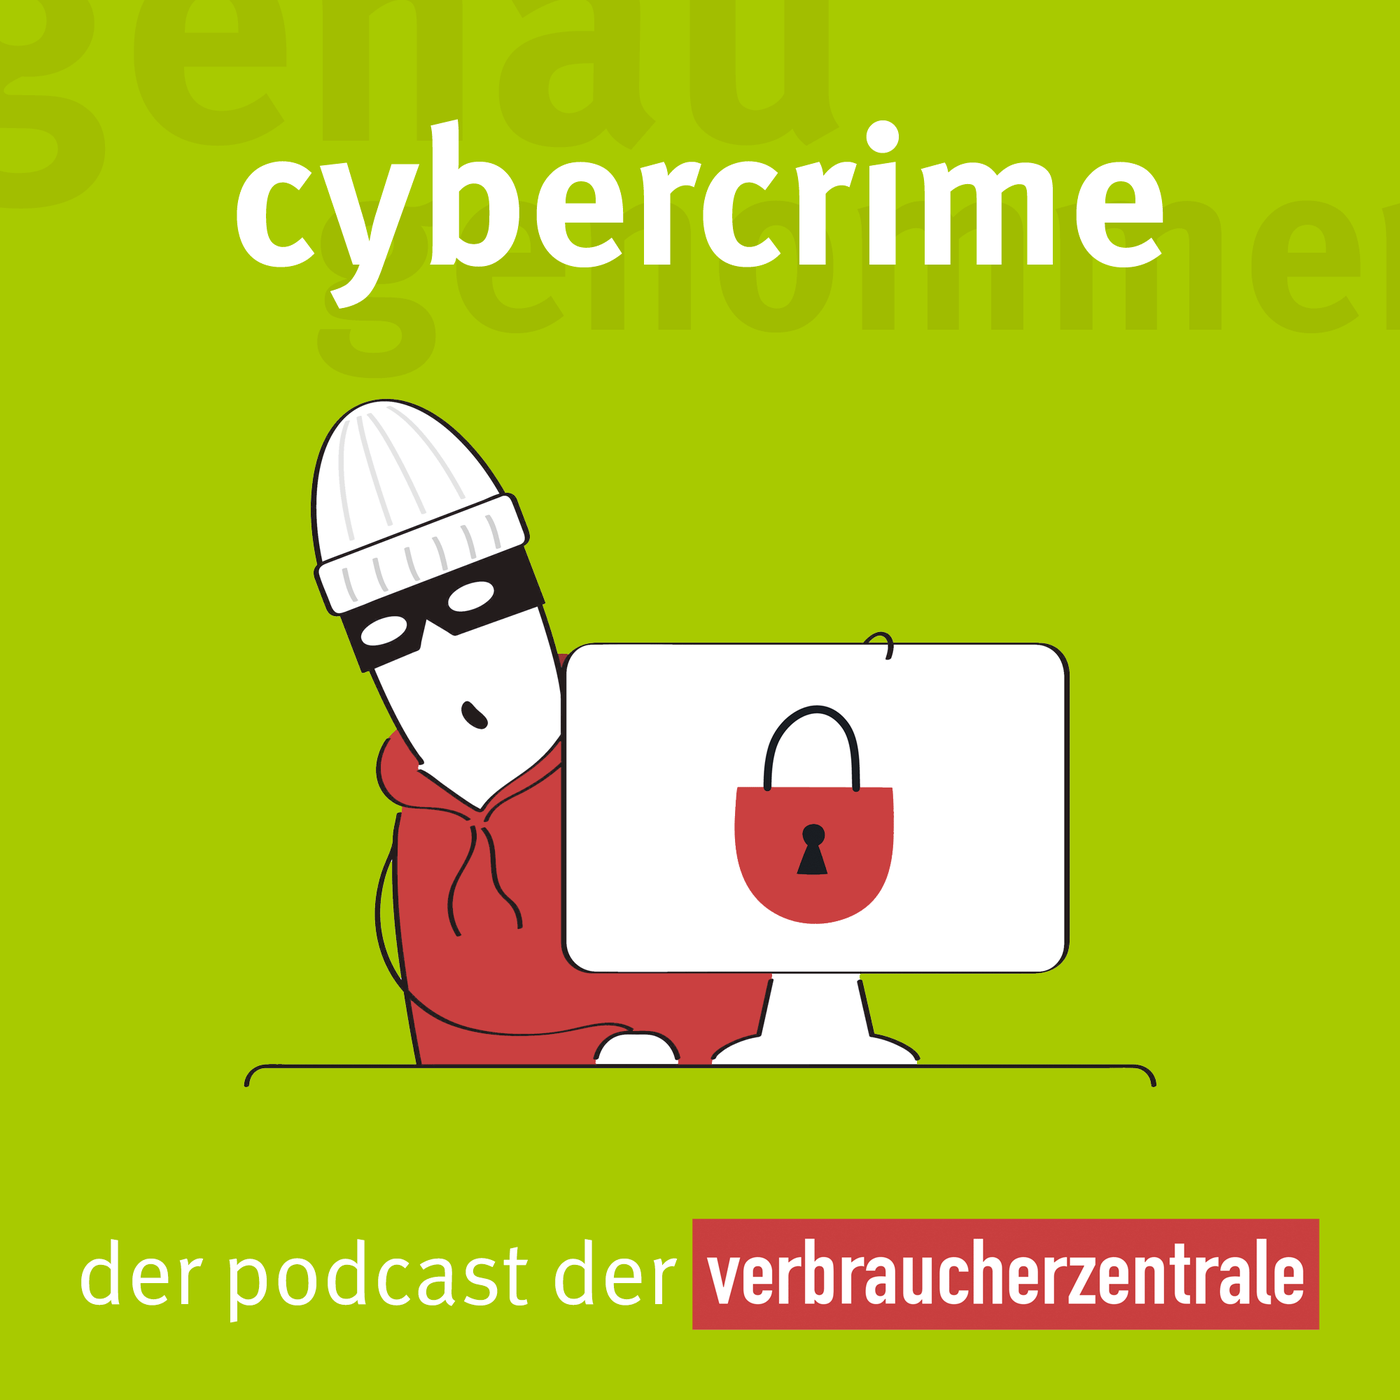 Was Sie schon immer über Cybercrime wissen wollten...